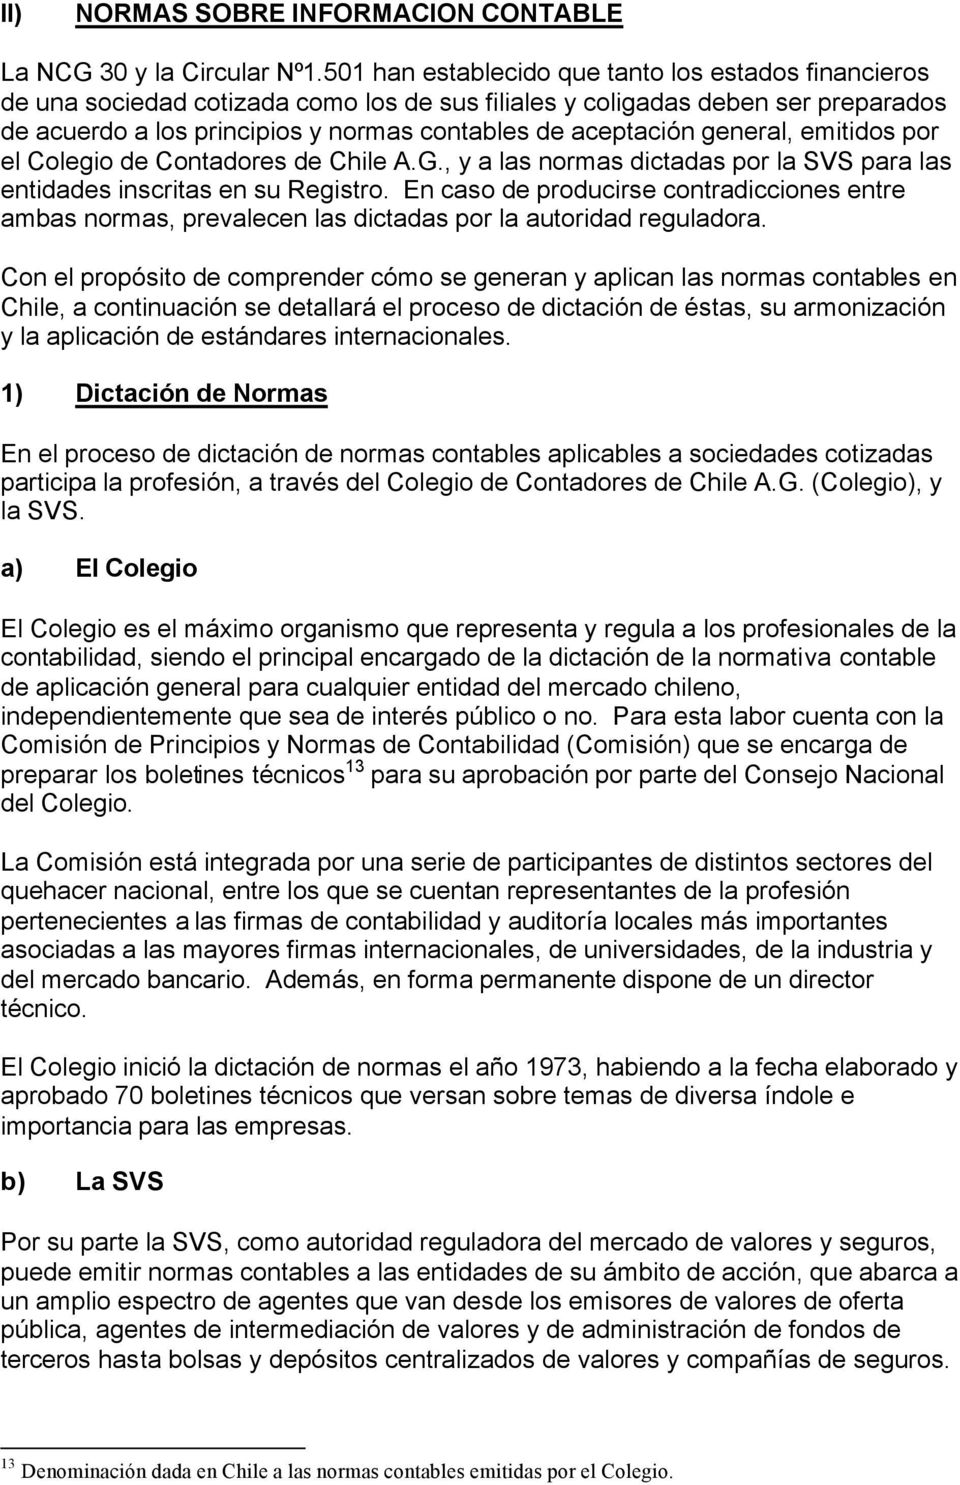 general, emitidos por el Colegio de Contadores de Chile A.G., y a las normas dictadas por la SVS para las entidades inscritas en su Registro.